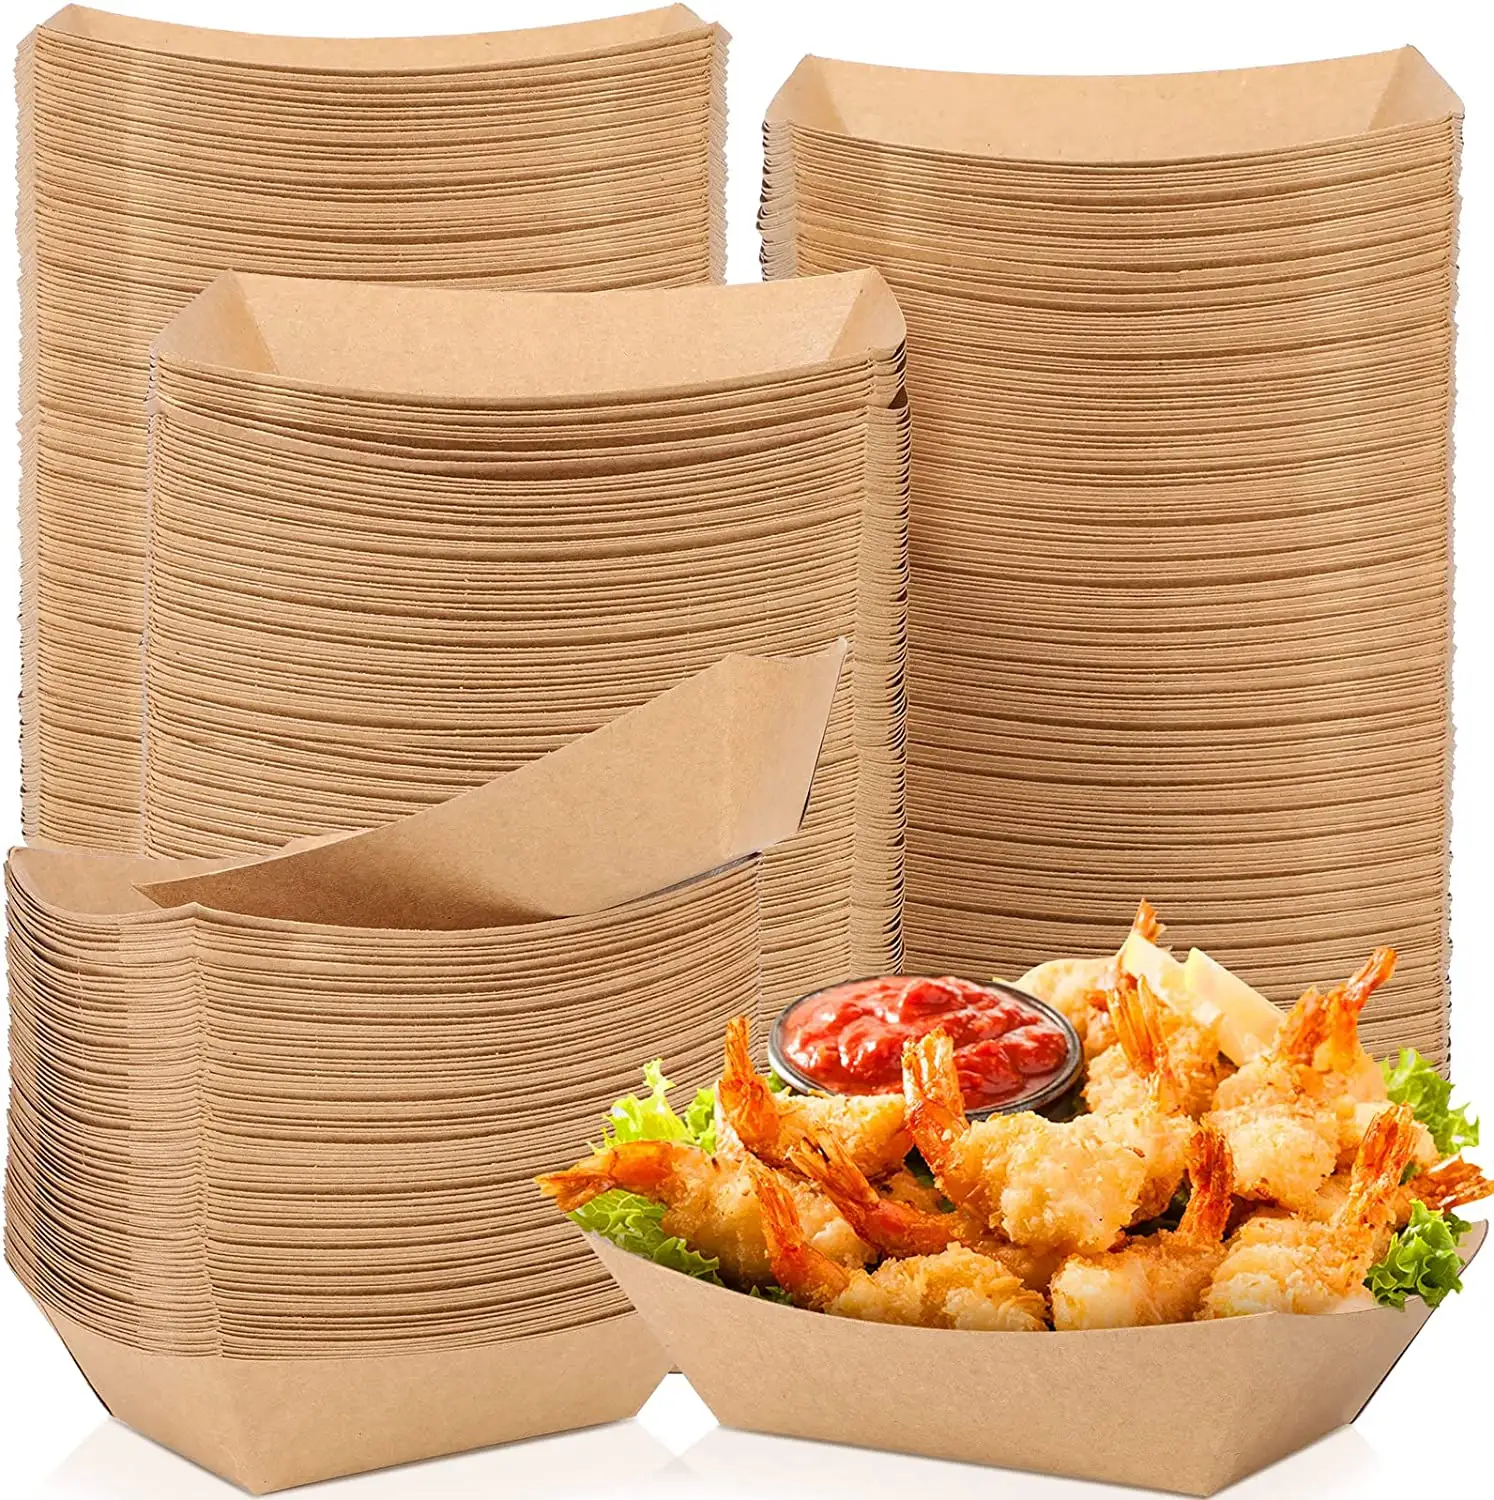 Vente en gros, emballage alimentaire imprimé personnalisé, plateau alimentaire en papier de Snac frit pour bateau